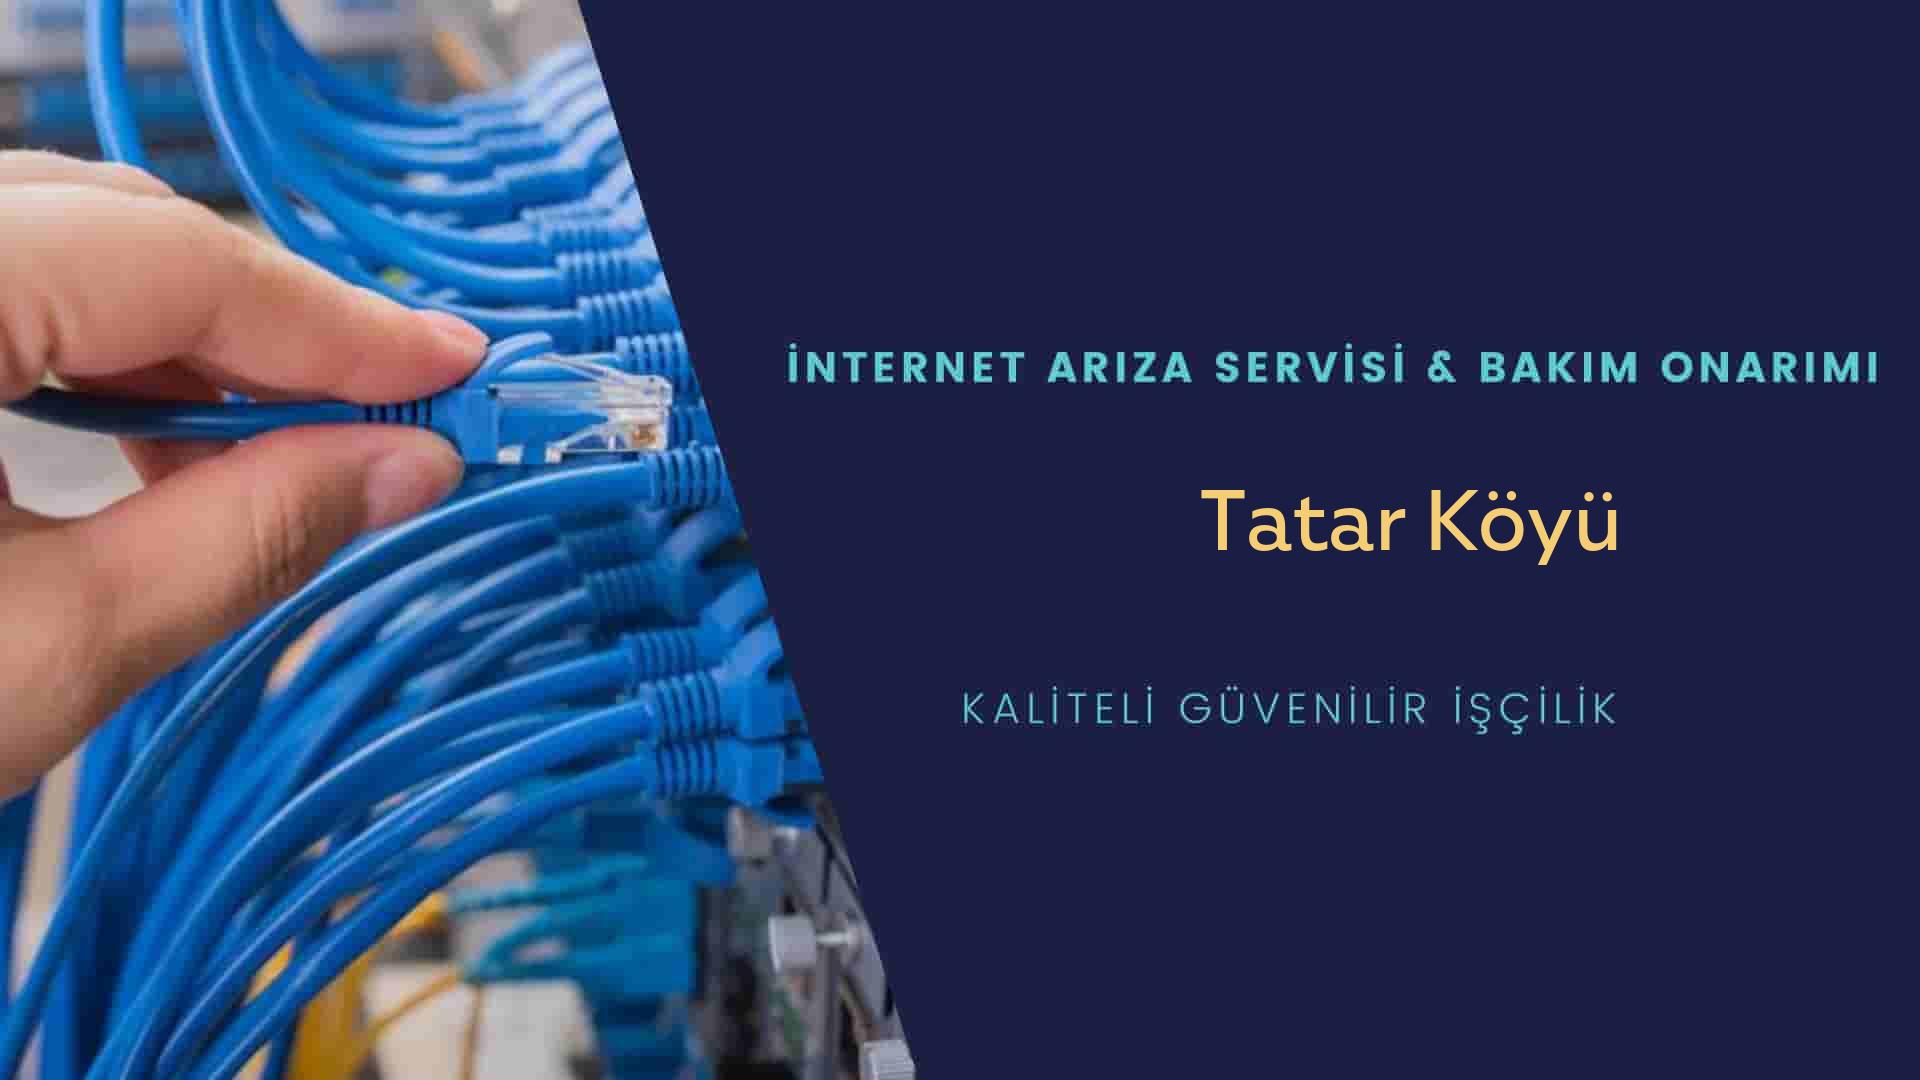 Tatar Köyü internet kablosu çekimi yapan yerler veya elektrikçiler mi? arıyorsunuz doğru yerdesiniz o zaman sizlere 7/24 yardımcı olacak profesyonel ustalarımız bir telefon kadar yakındır size.